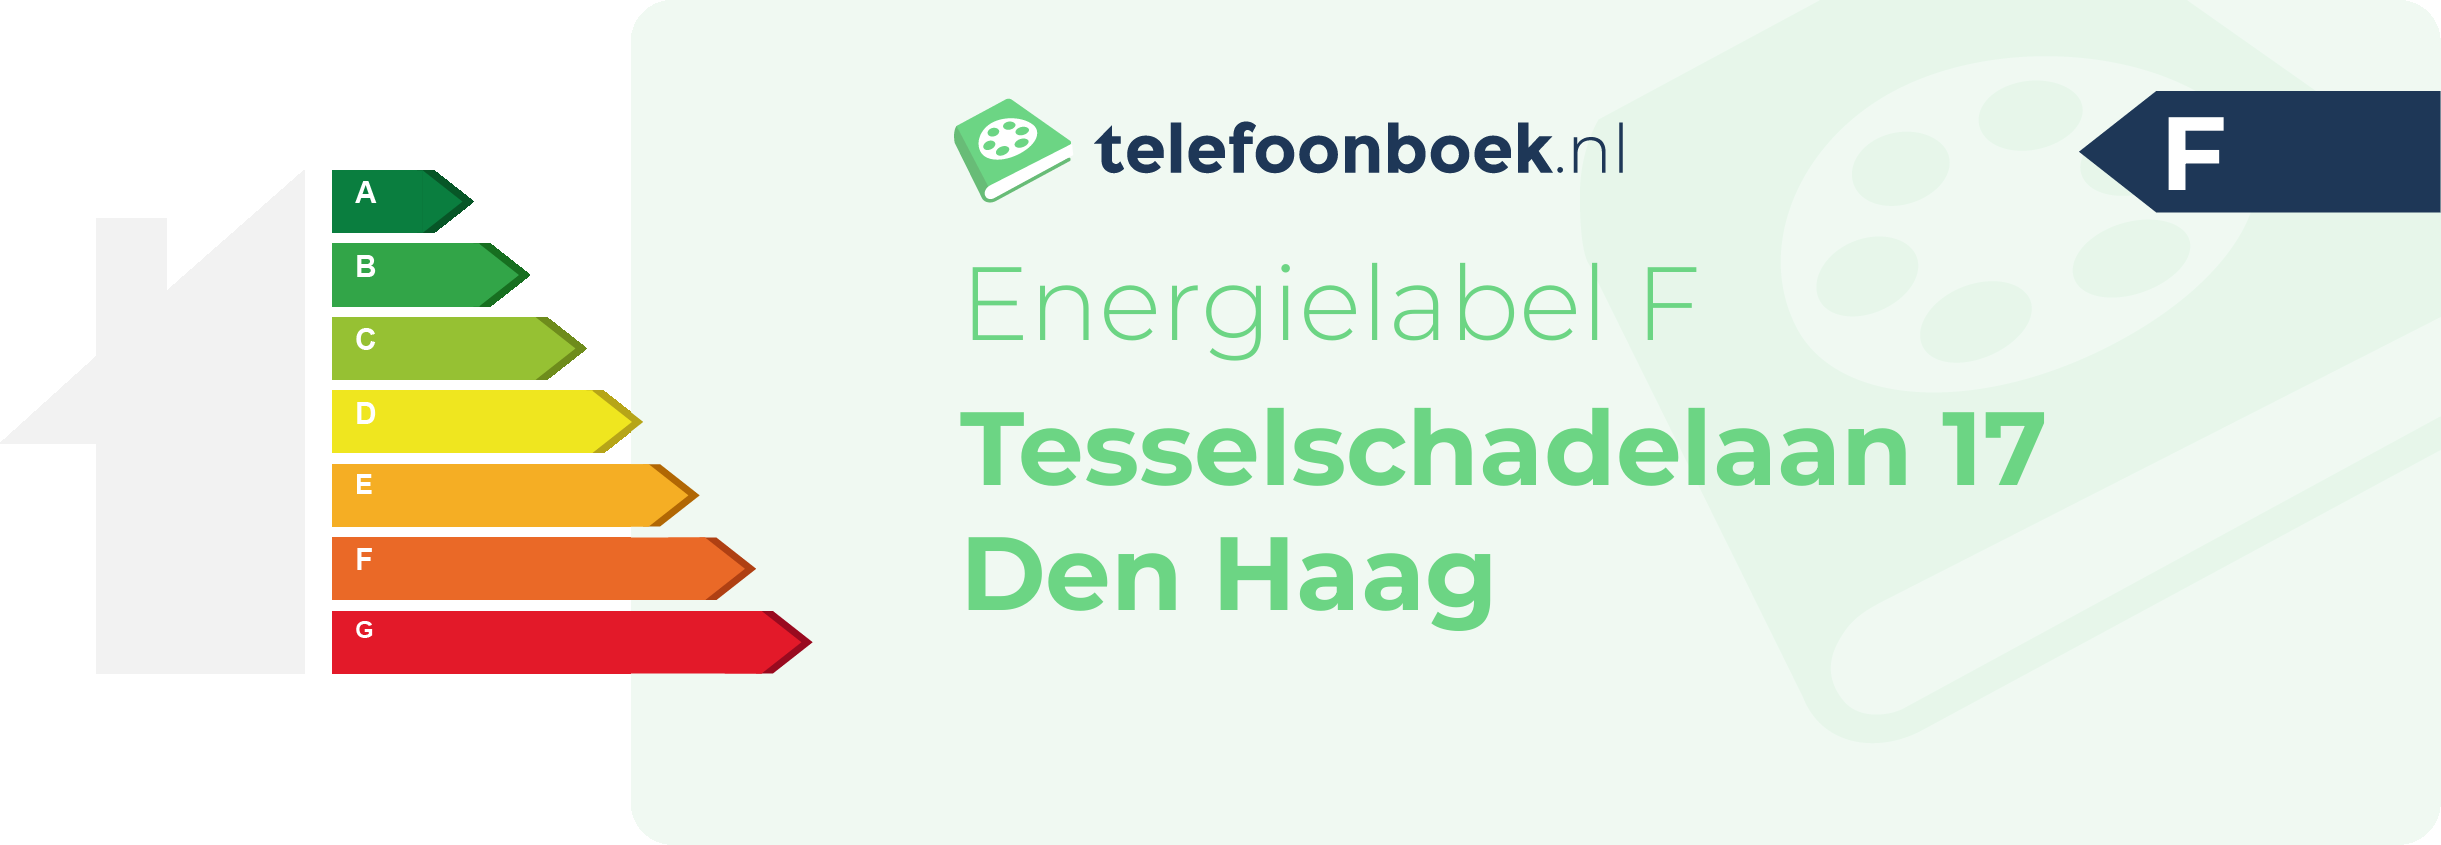 Energielabel Tesselschadelaan 17 Den Haag